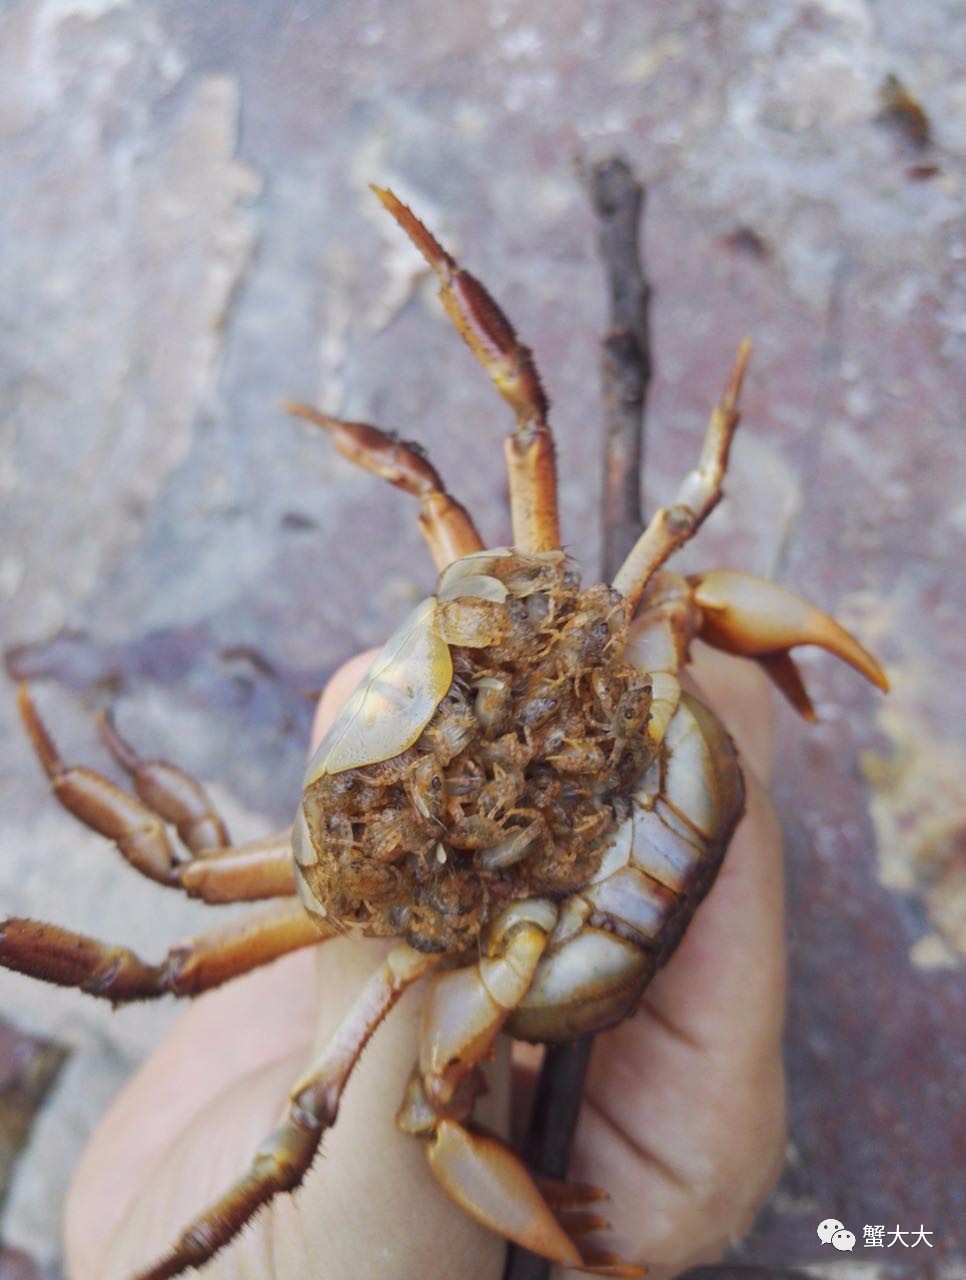 趣闻 看一只螃蟹怎么生小螃蟹,竟然还生出这么多!